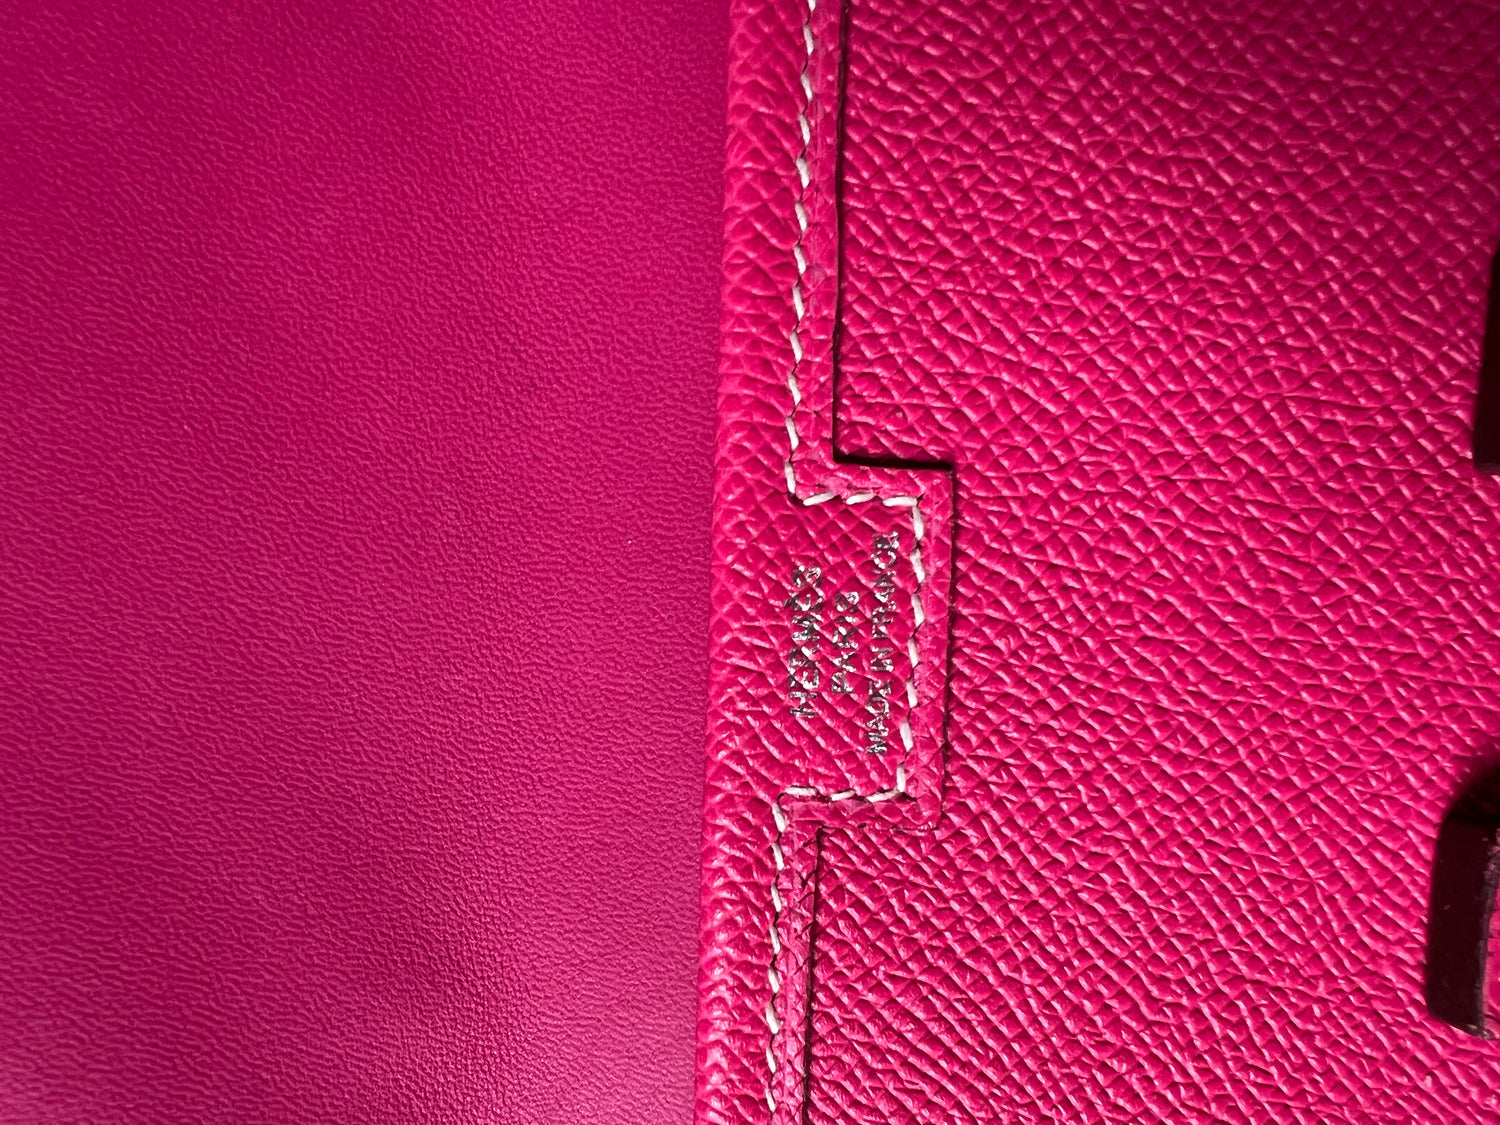 Hermes Red Vintage Epsom Leather Jige Clutch Bag For Sale at